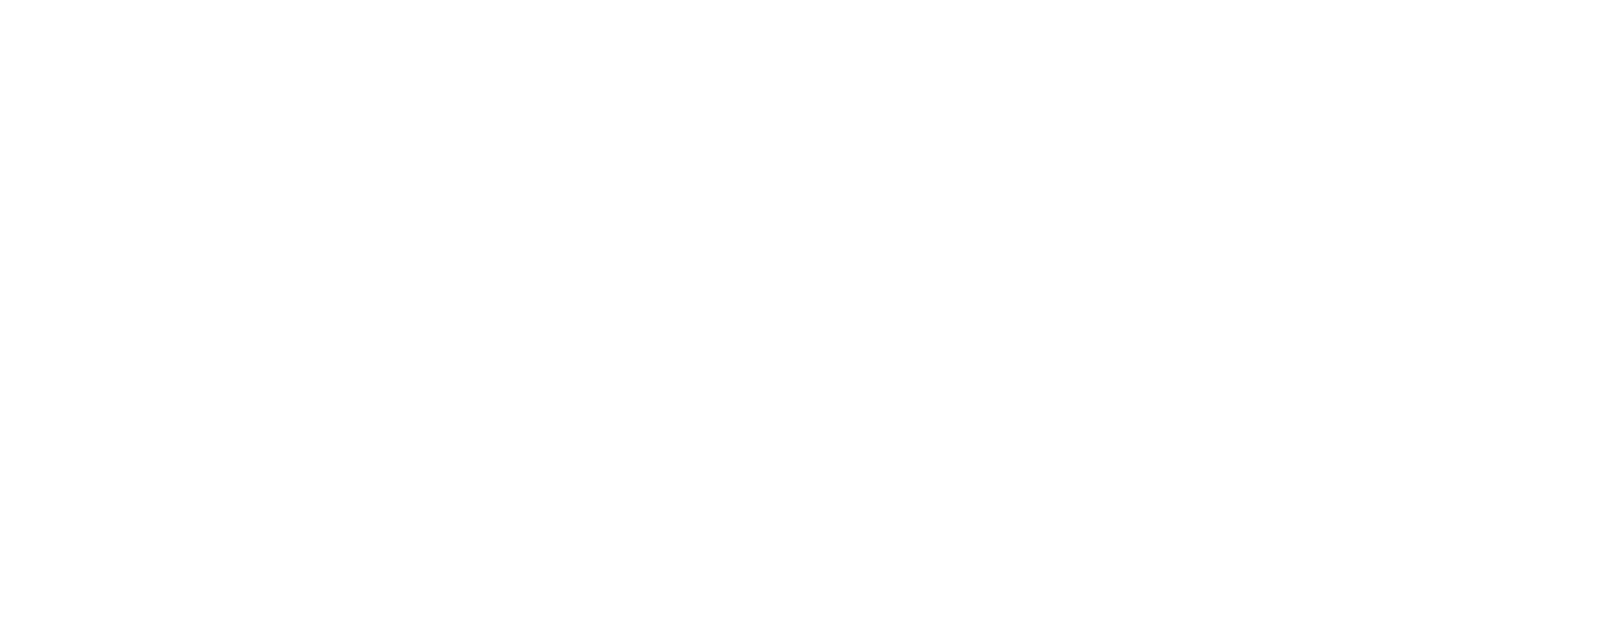 Agrotransformación logo